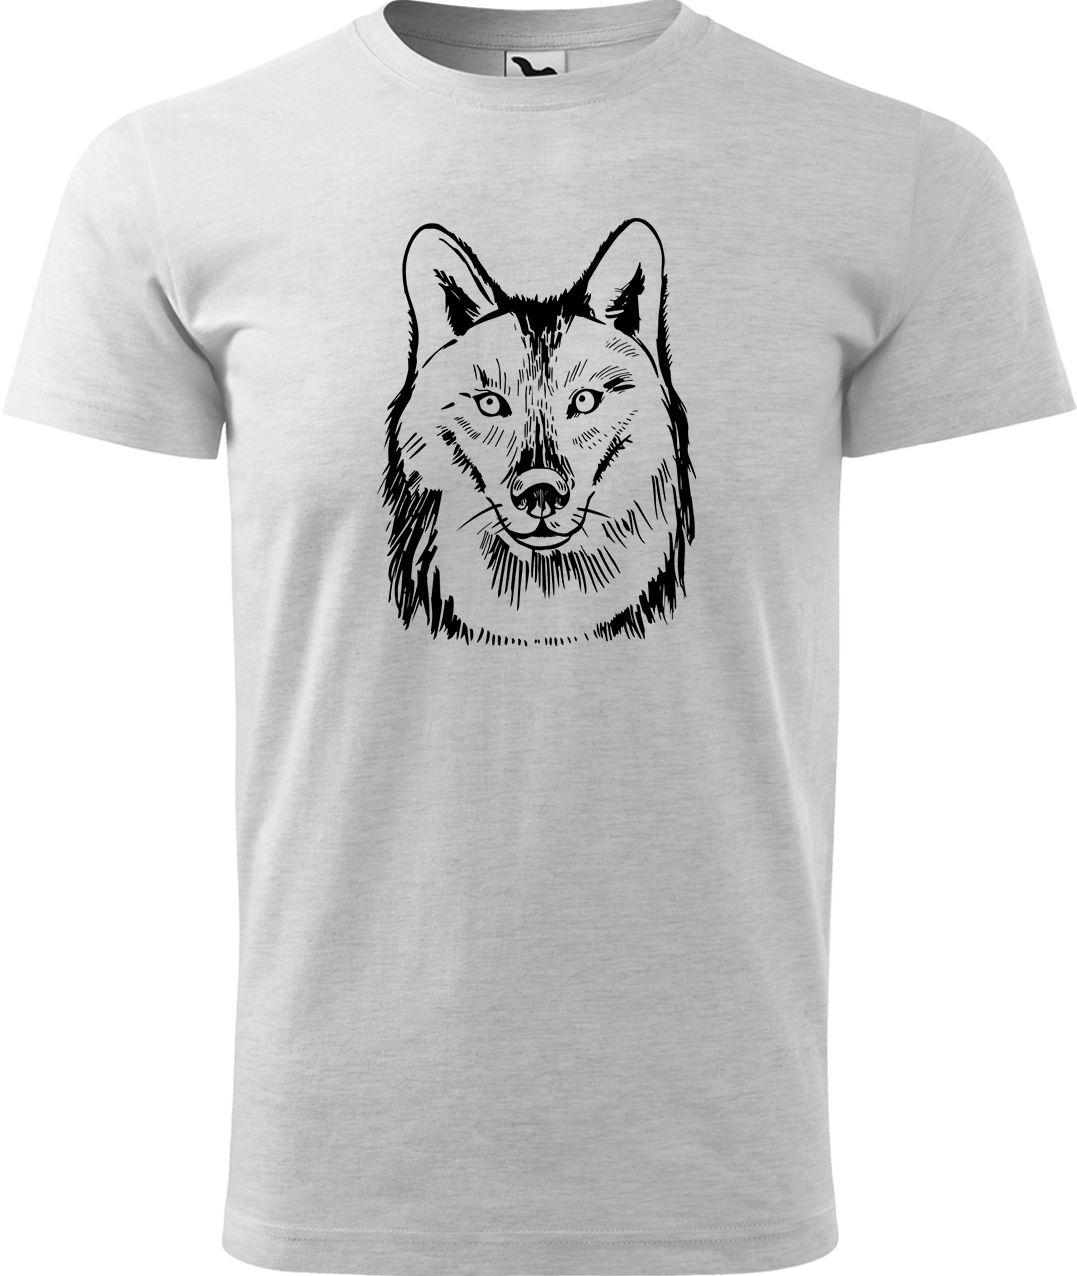 Pánské tričko s vlkem - Kresba vlka Velikost: XL, Barva: Světle šedý melír (03), Střih: pánský